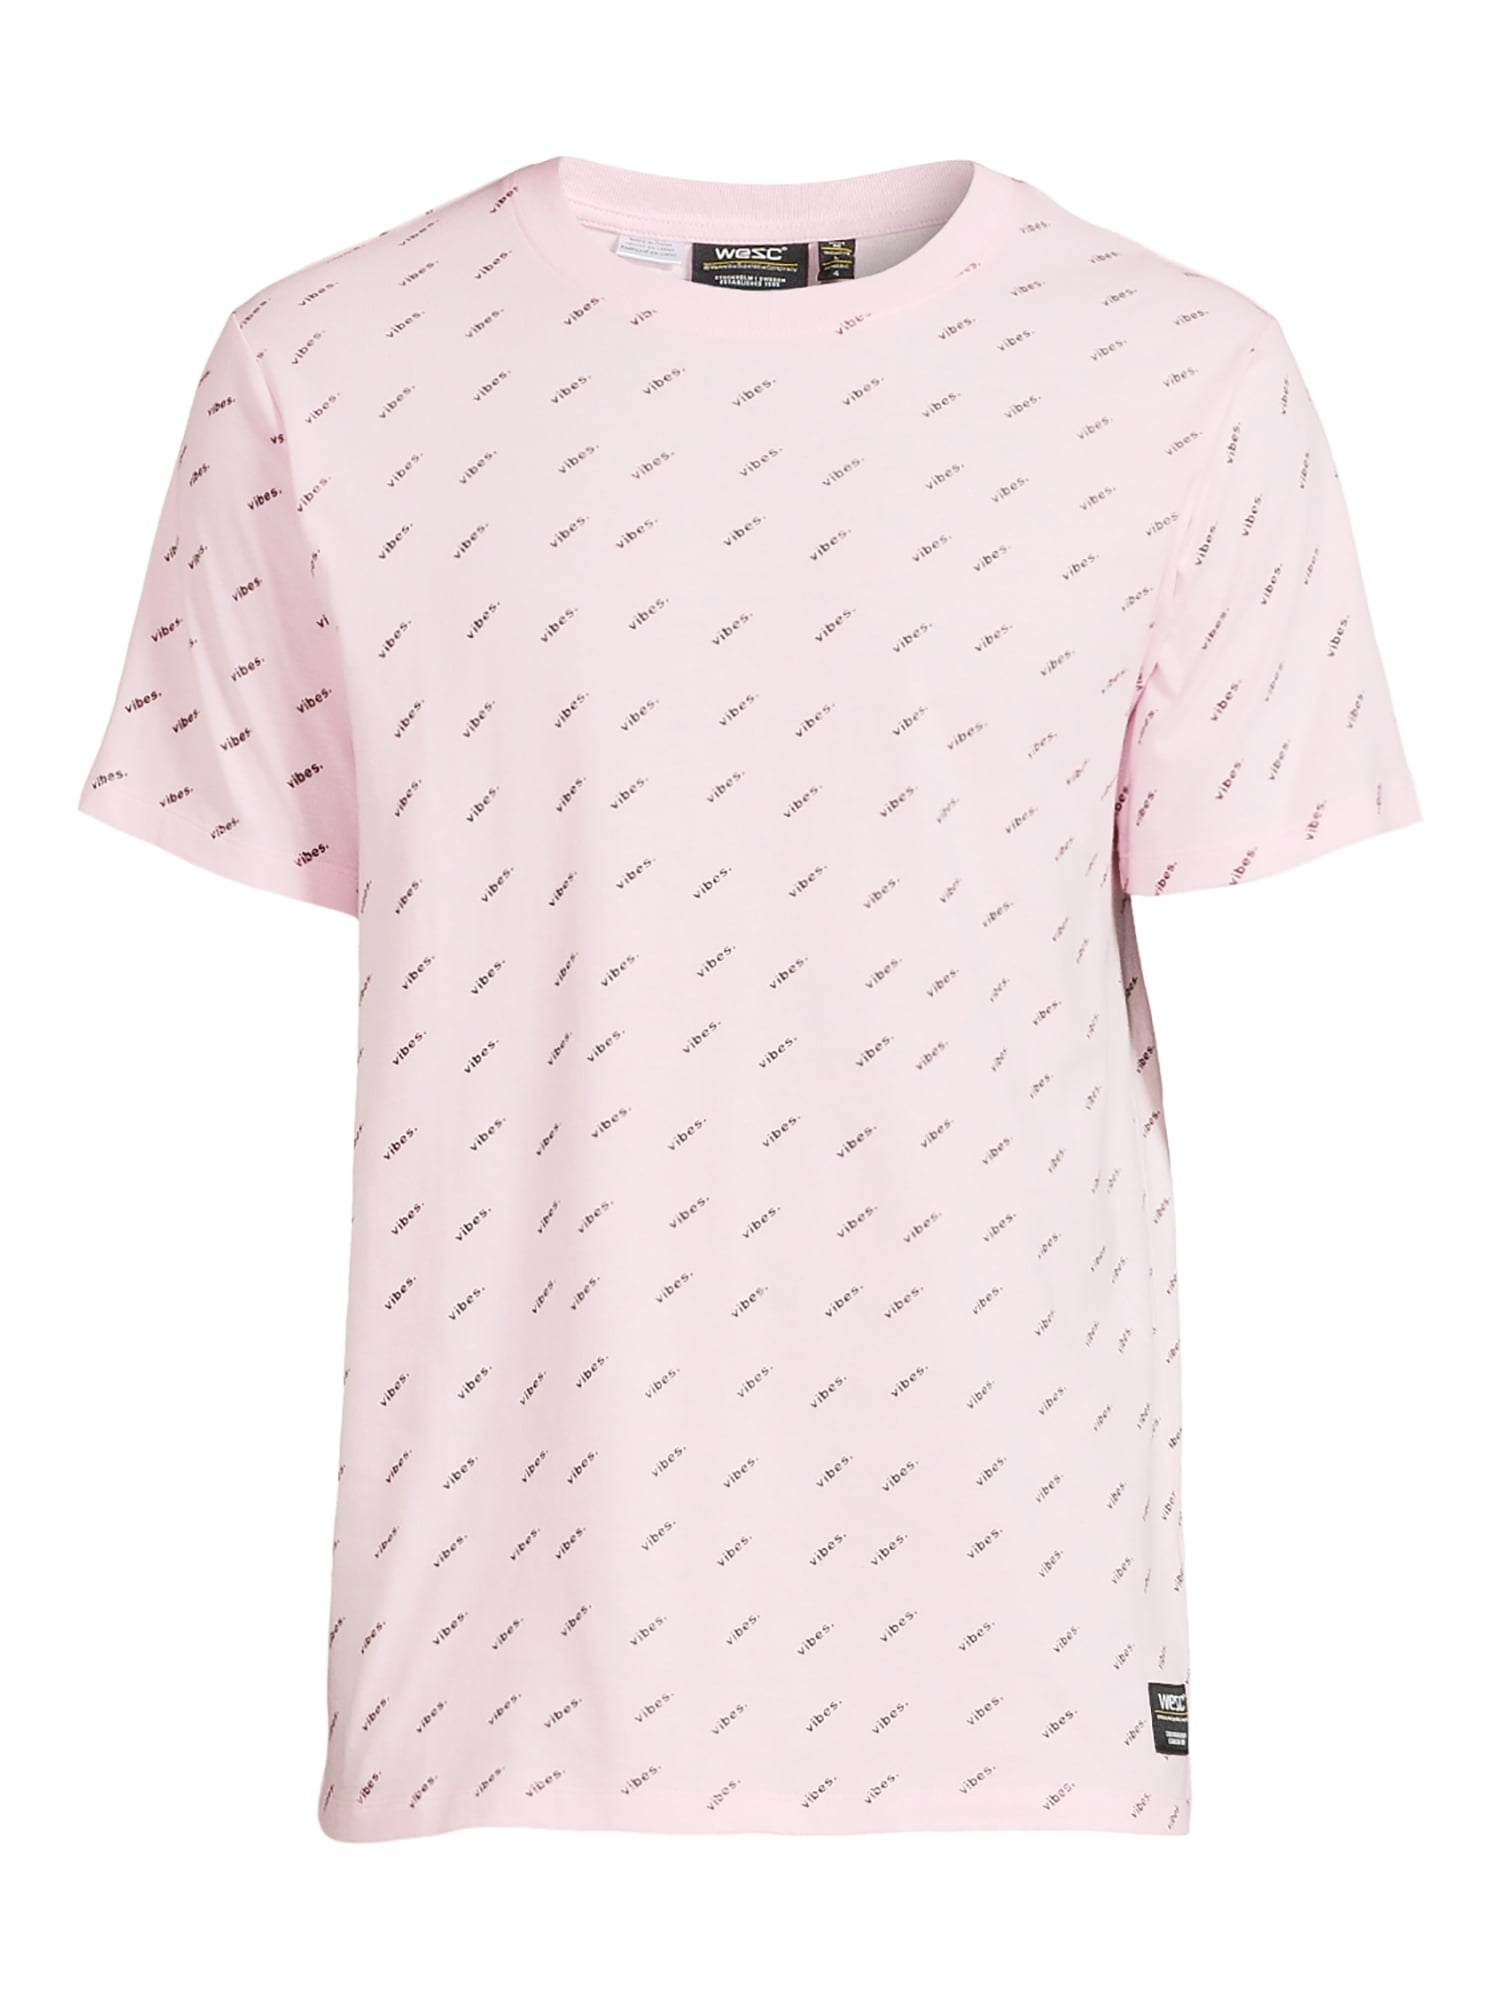 Industrial Empresa arco WeSC Men's Max Vibes Graphic T-Shirt, Sizes XS-2XL, Mens T-Shirts -  Walmart.com